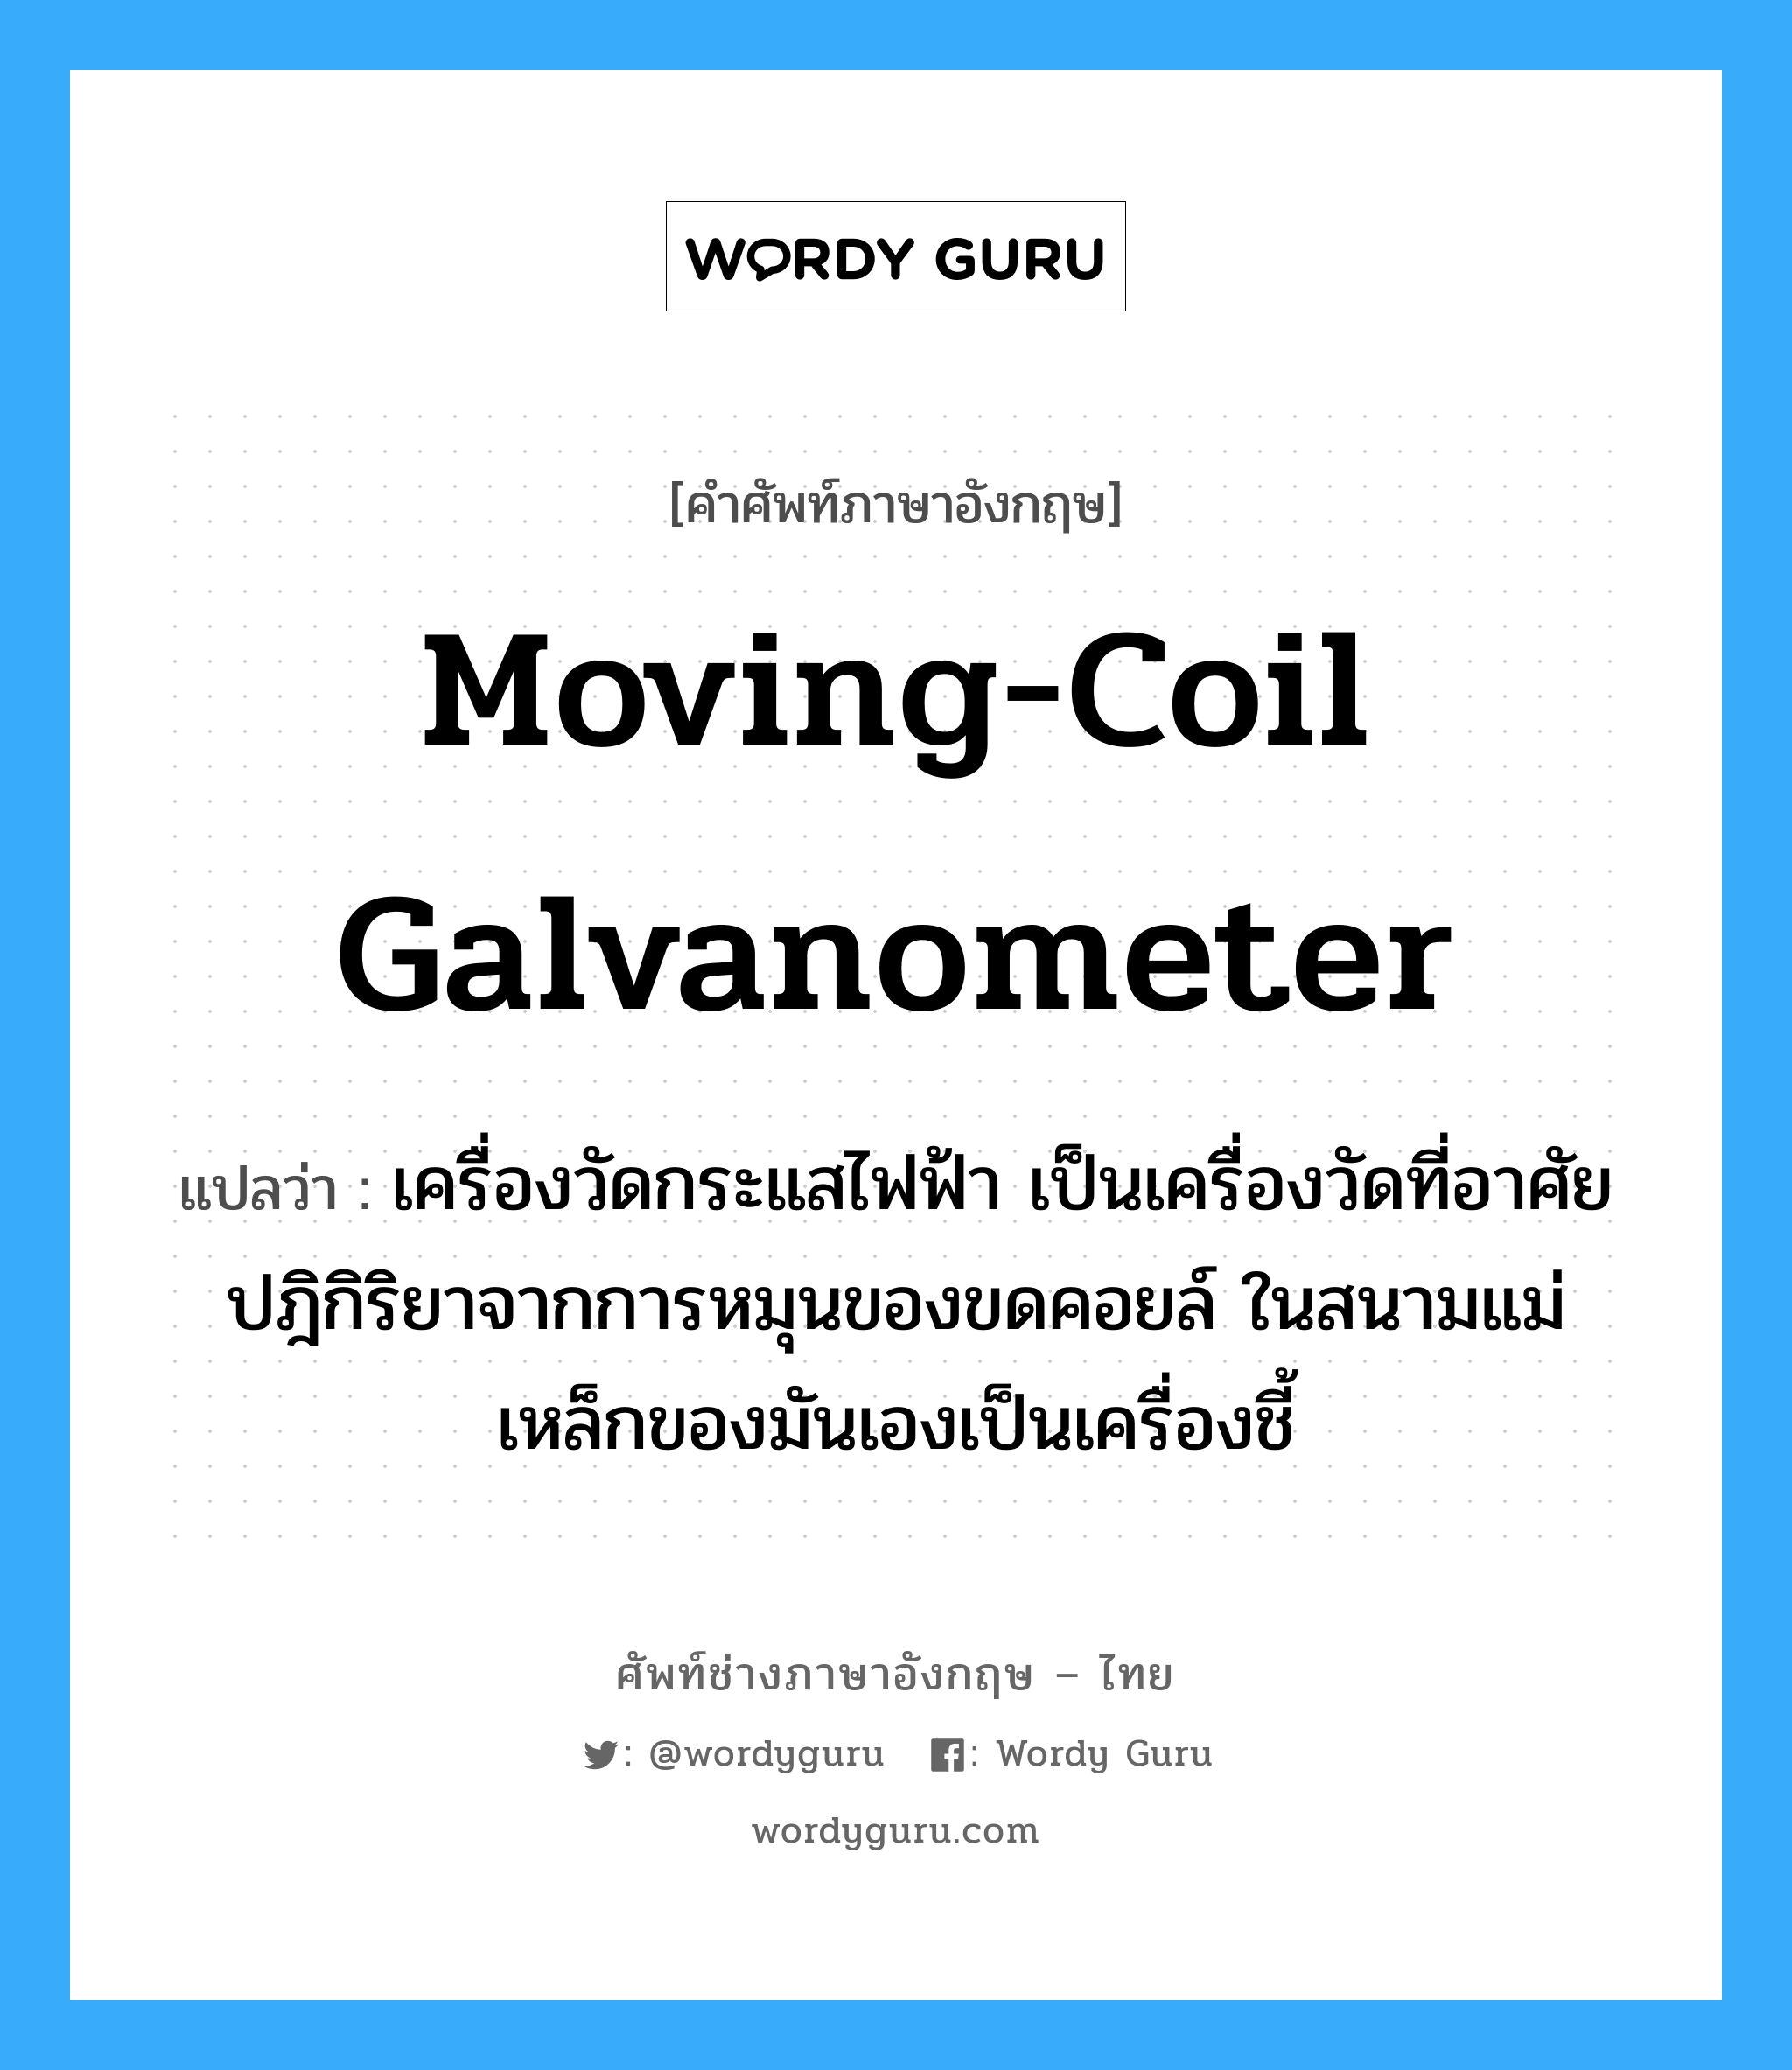 moving-coil galvanometer แปลว่า?, คำศัพท์ช่างภาษาอังกฤษ - ไทย moving-coil galvanometer คำศัพท์ภาษาอังกฤษ moving-coil galvanometer แปลว่า เครื่องวัดกระแสไฟฟ้า เป็นเครื่องวัดที่อาศัยปฎิกิริยาจากการหมุนของขดคอยล์ ในสนามแม่เหล็กของมันเองเป็นเครื่องชี้